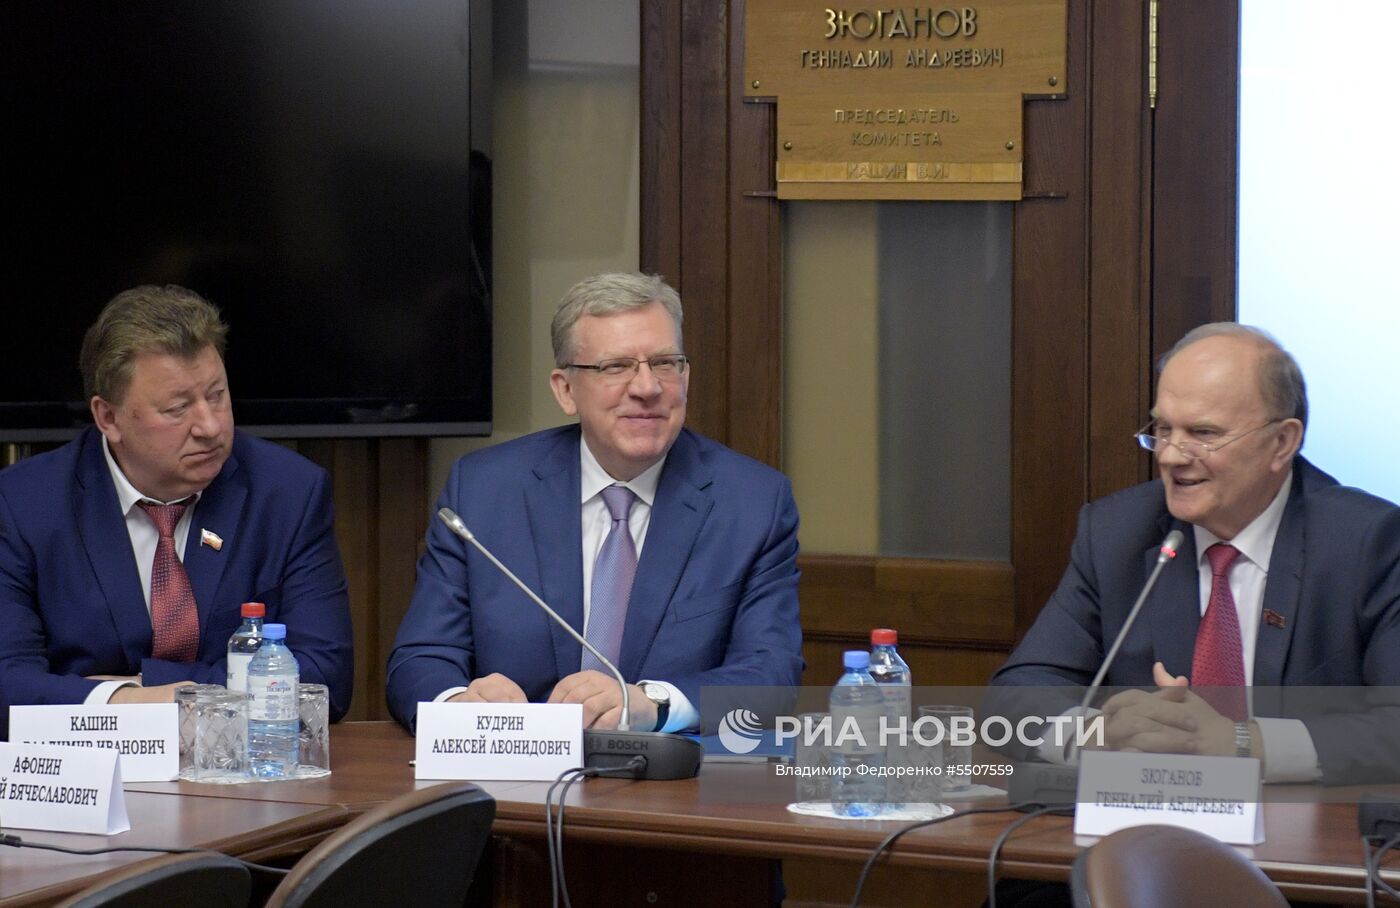 А. Кудрин встретился с представителями фракций в Госдуме